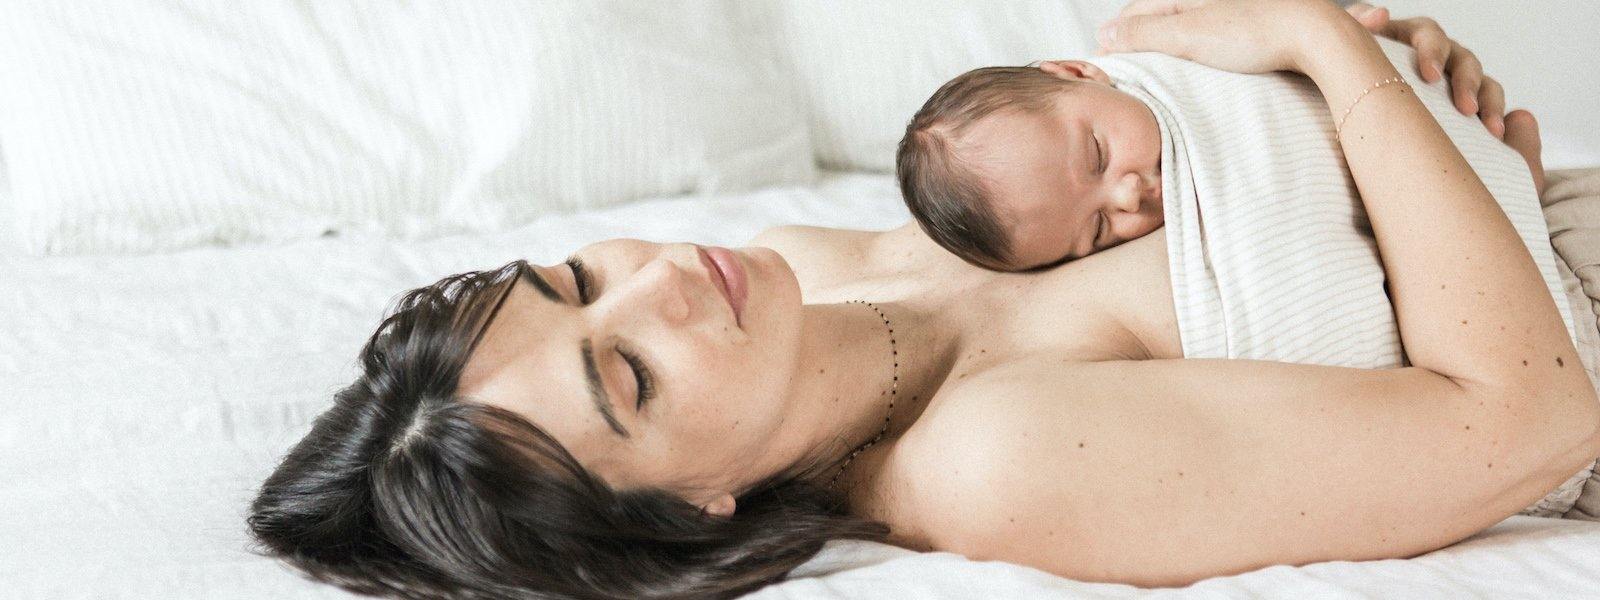 Les bienfaits du peau à peau pour maman et bébé dès la naissance –  MintyWendy